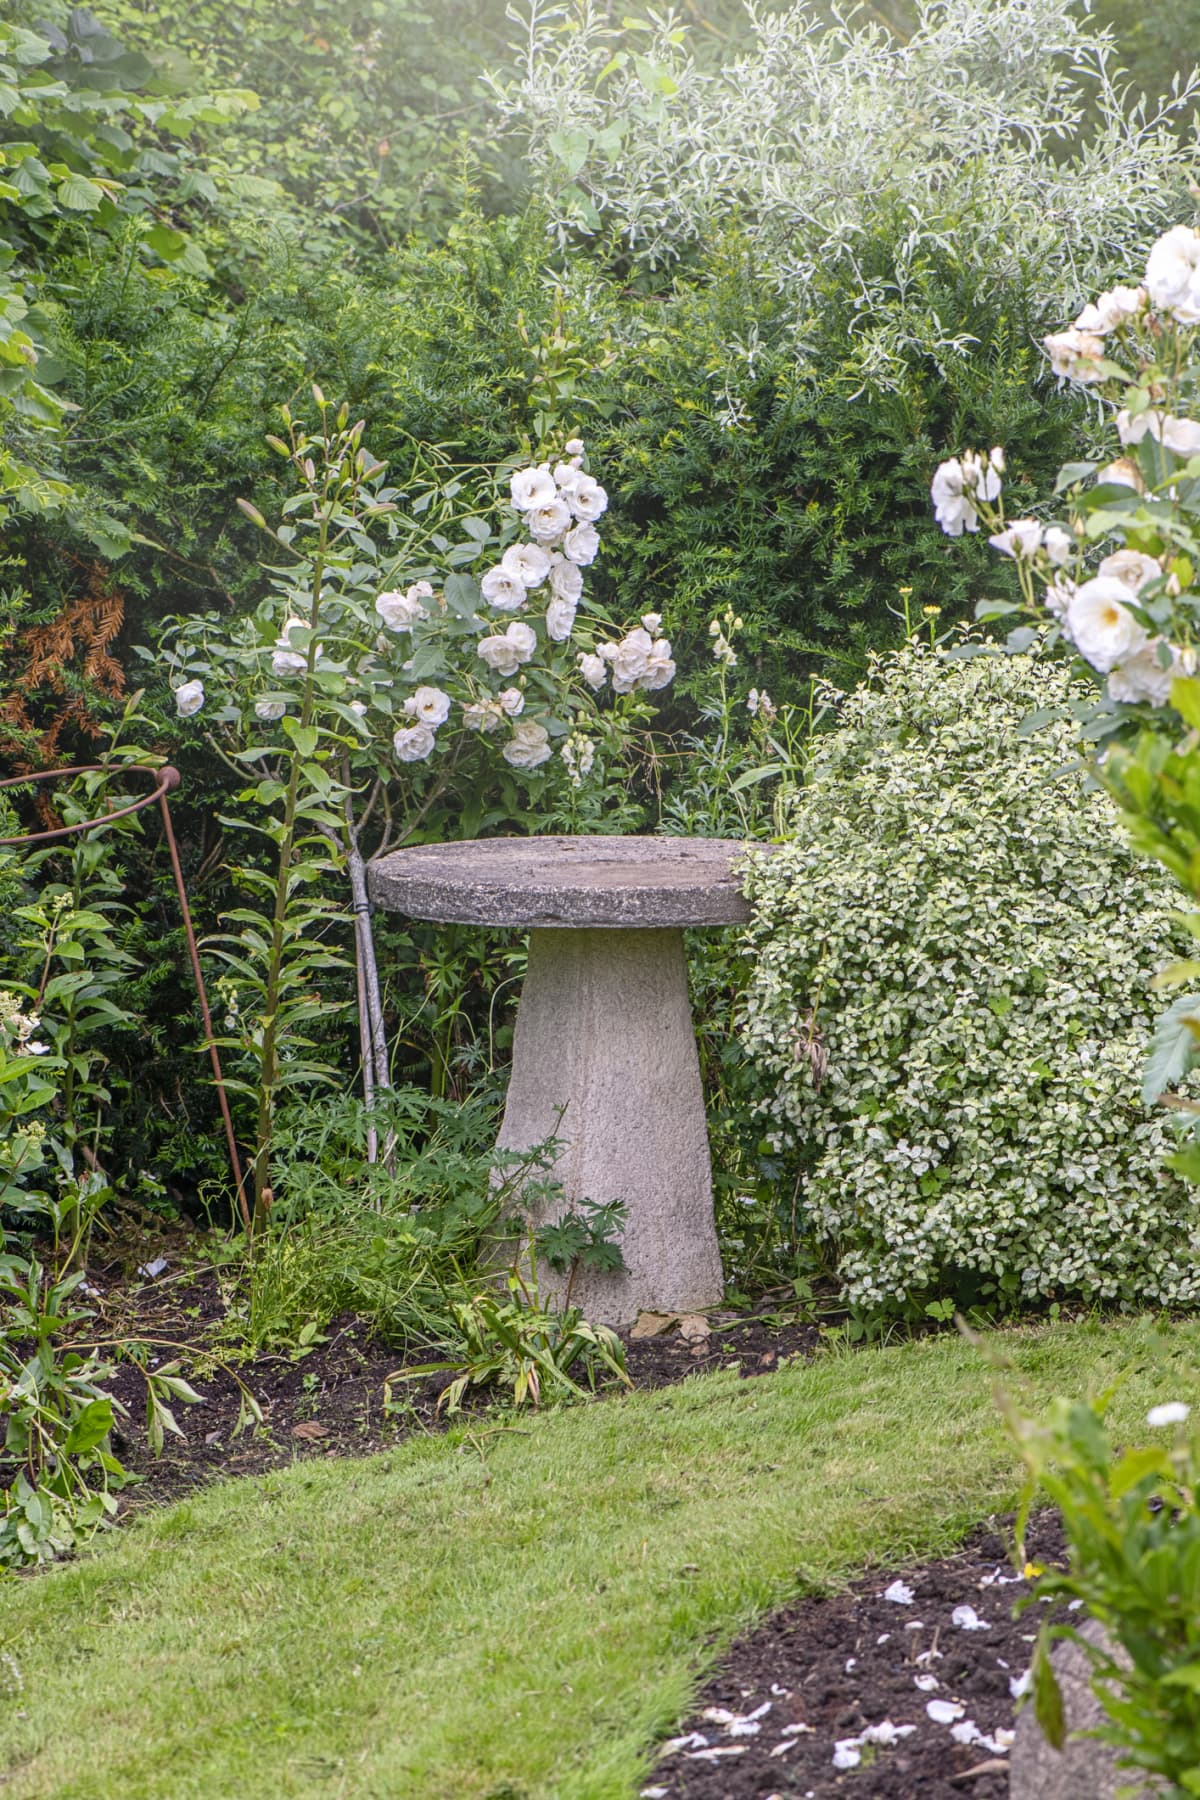 Stone birdbath in a flowered garden